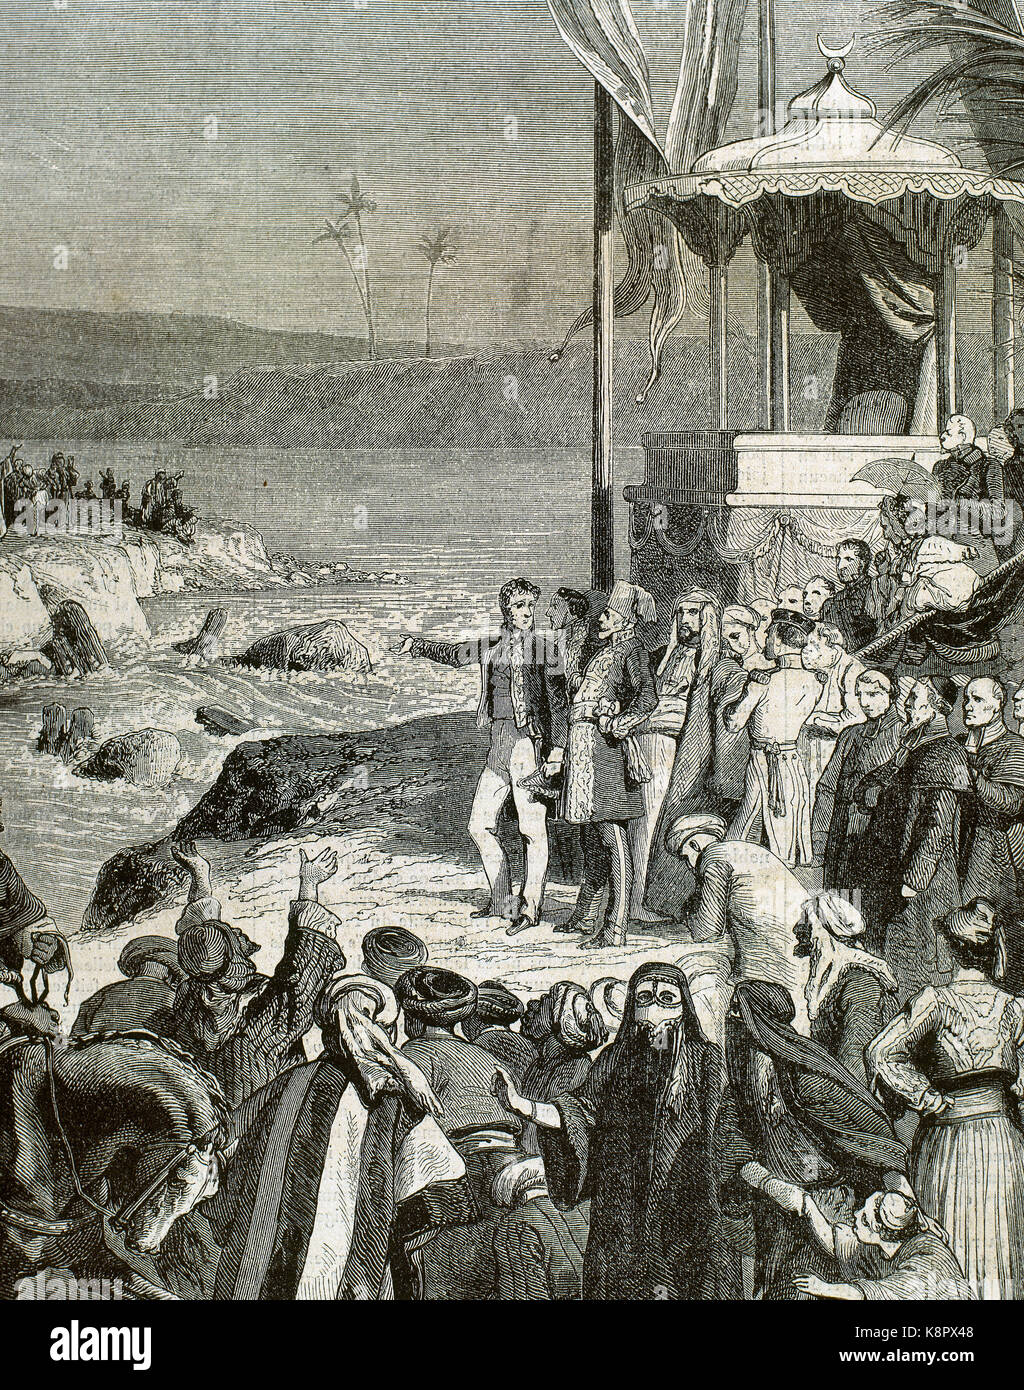 Ägypten. Den Suezkanal. Es verbindet das Mittelmeer, das rote Meer durch den Isthmus von Suez. Eröffnung des Suezkanals in port-said am 17. November 1869 unter Isma'il Pascha (1830-1895). Kupferstich von Desandre. Stockfoto